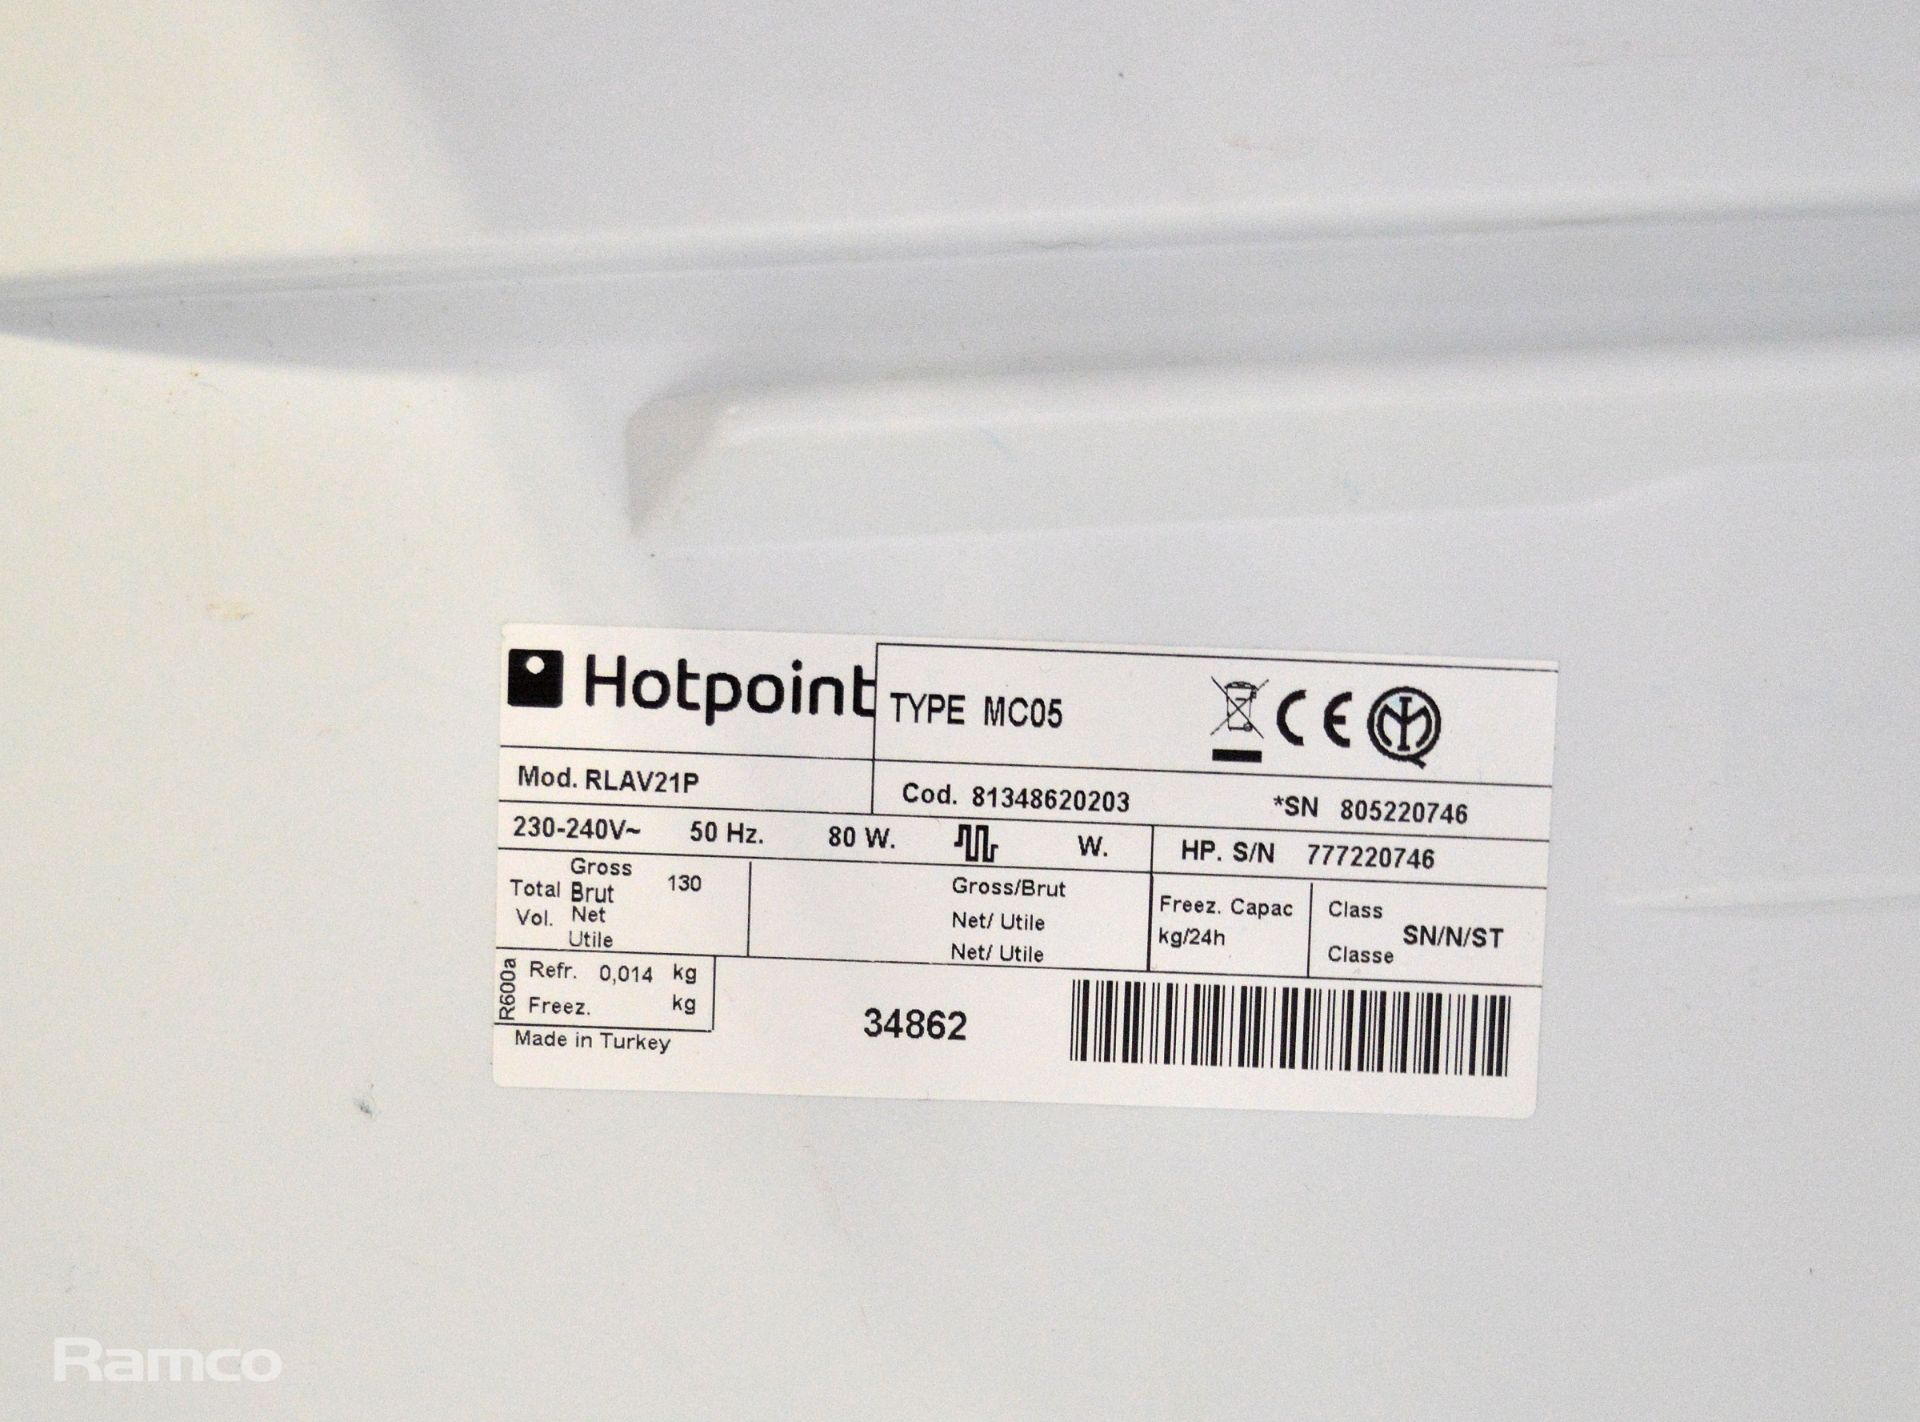 Hotpoint Rlav21 undercounter refrigerator 240V - Image 3 of 5